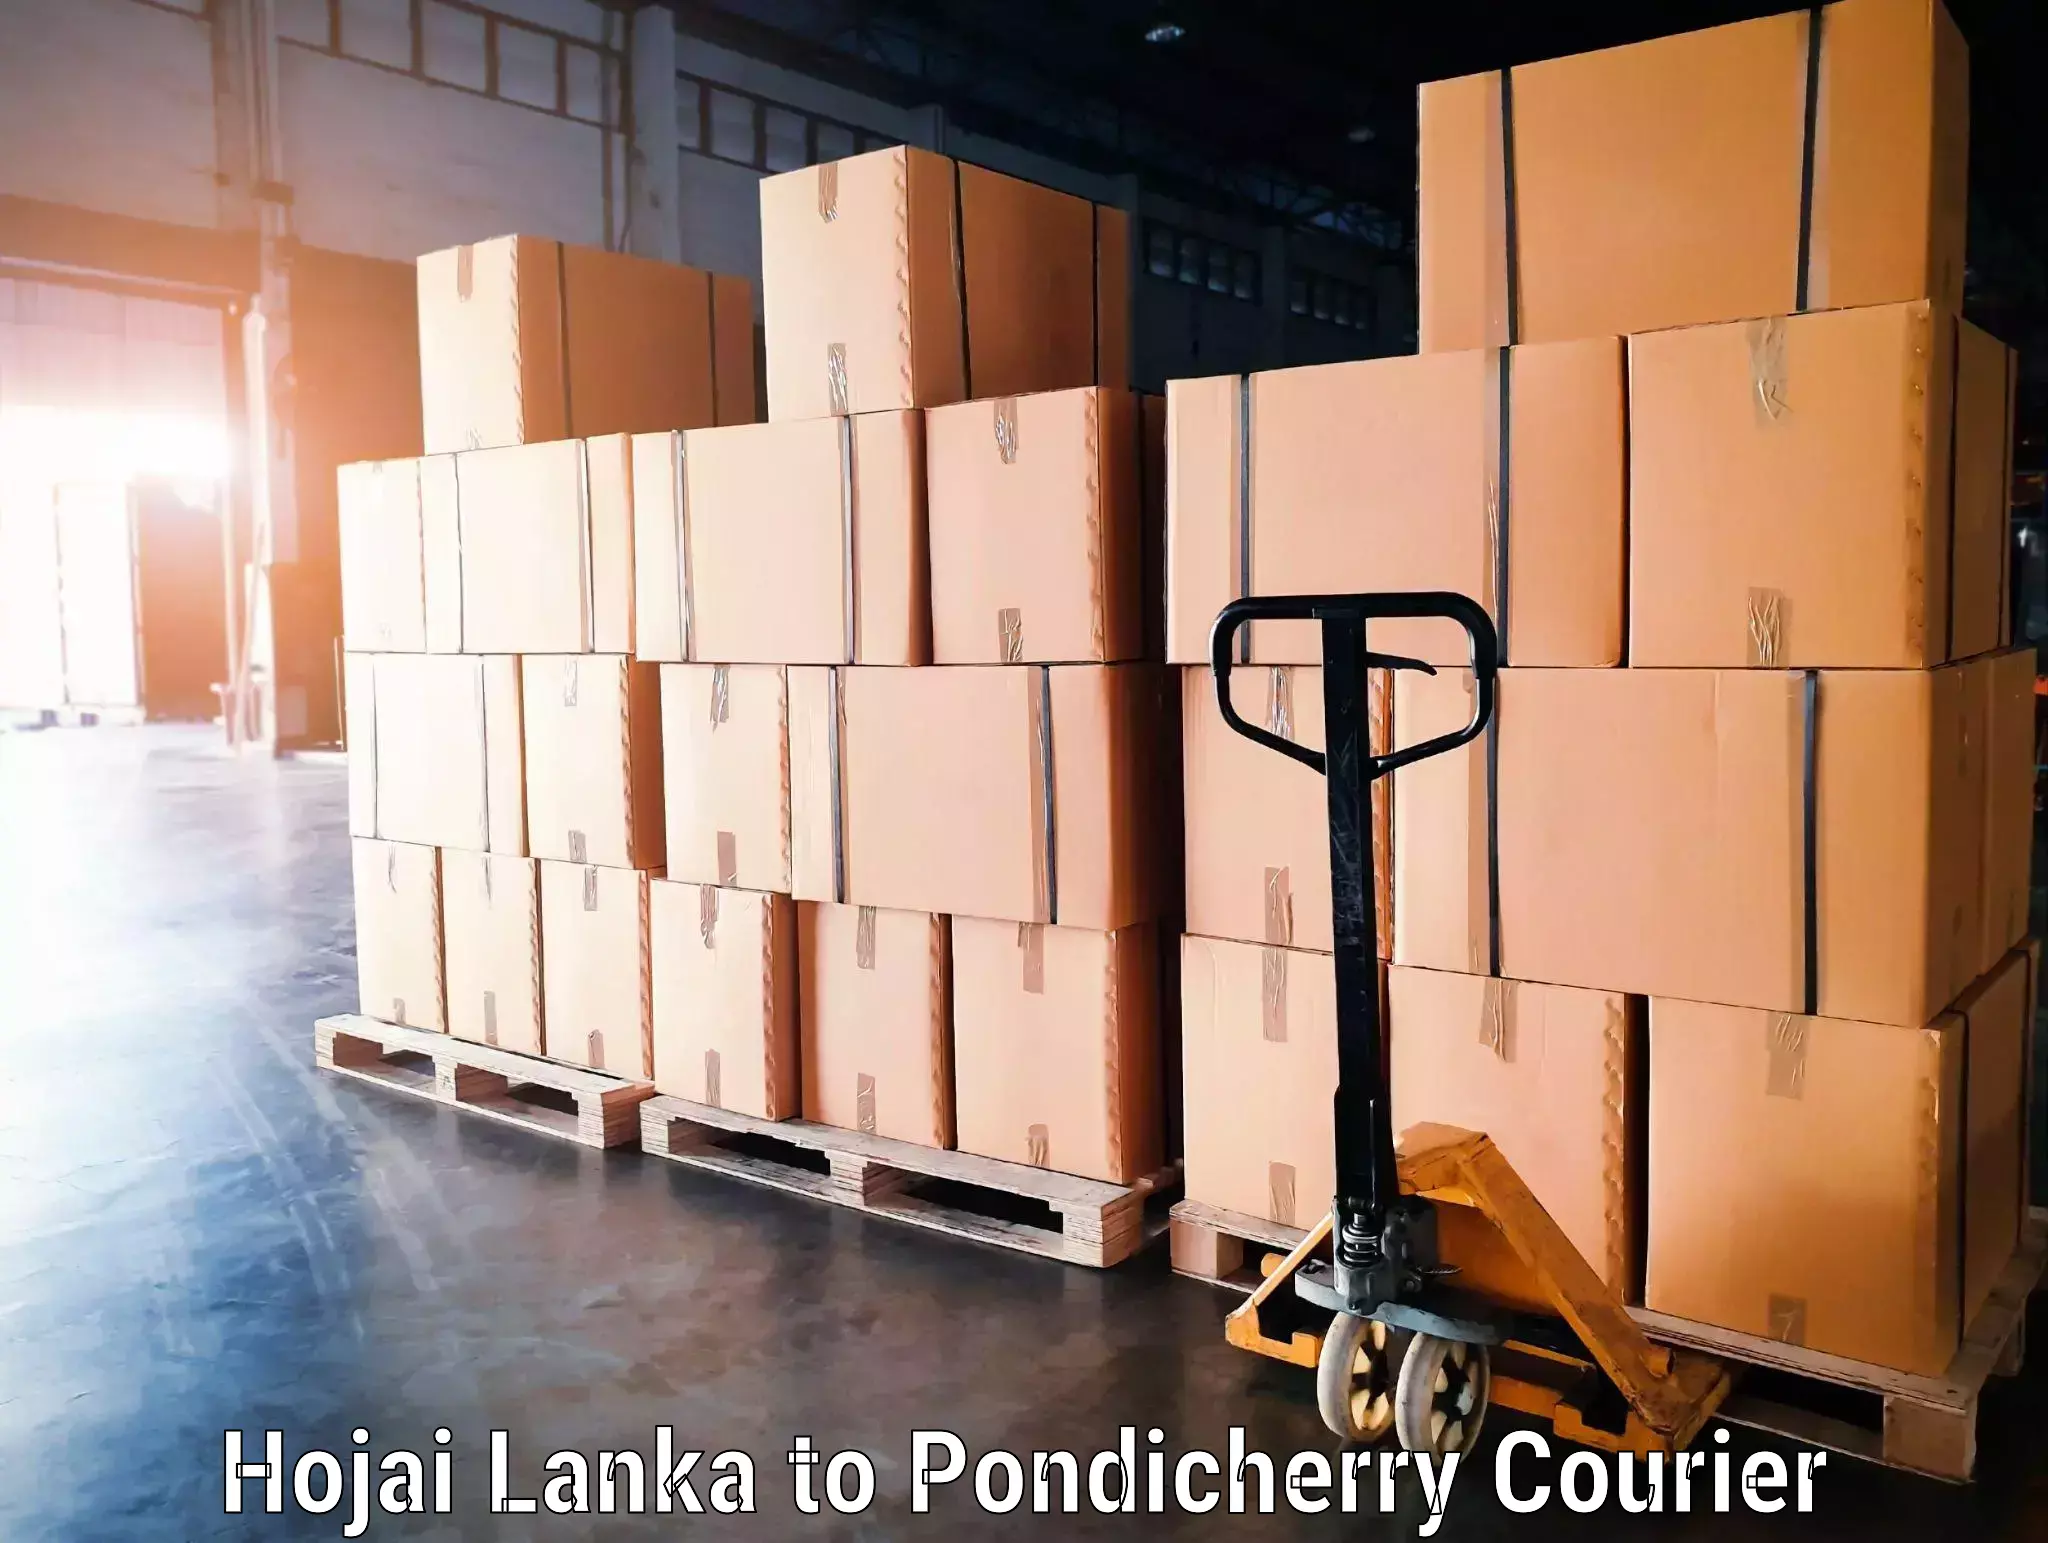 Regional luggage transport Hojai Lanka to Pondicherry University